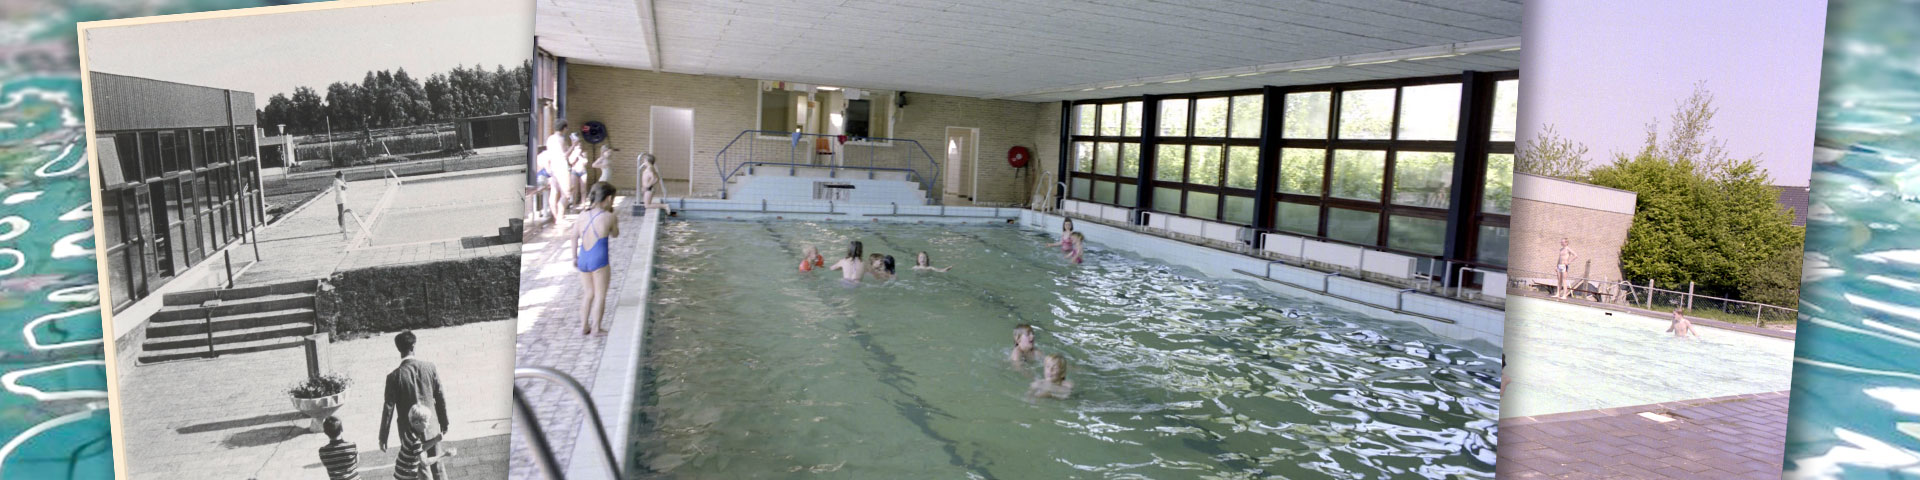 zwembad-deDubbel-binnenbad-zwijndrecht